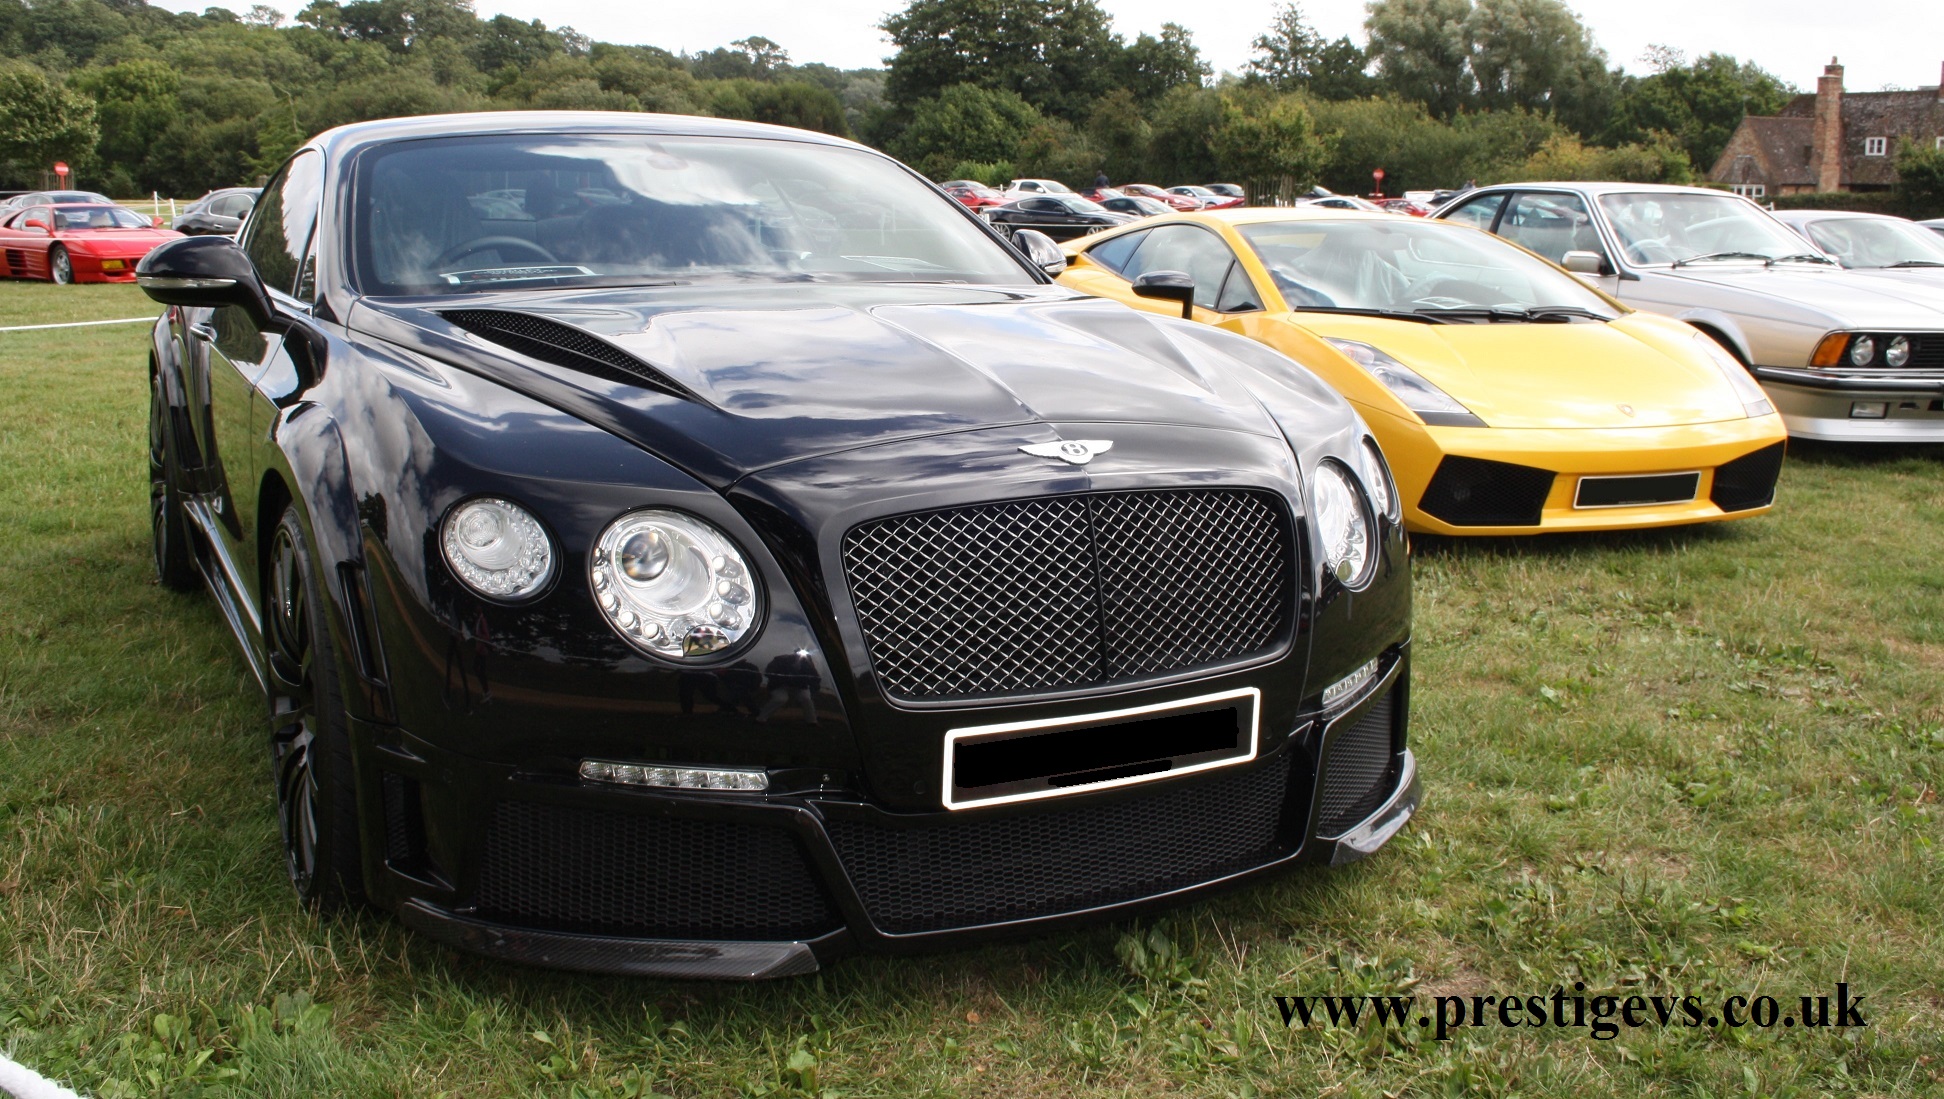 Bentley Prestigevs.co.uk